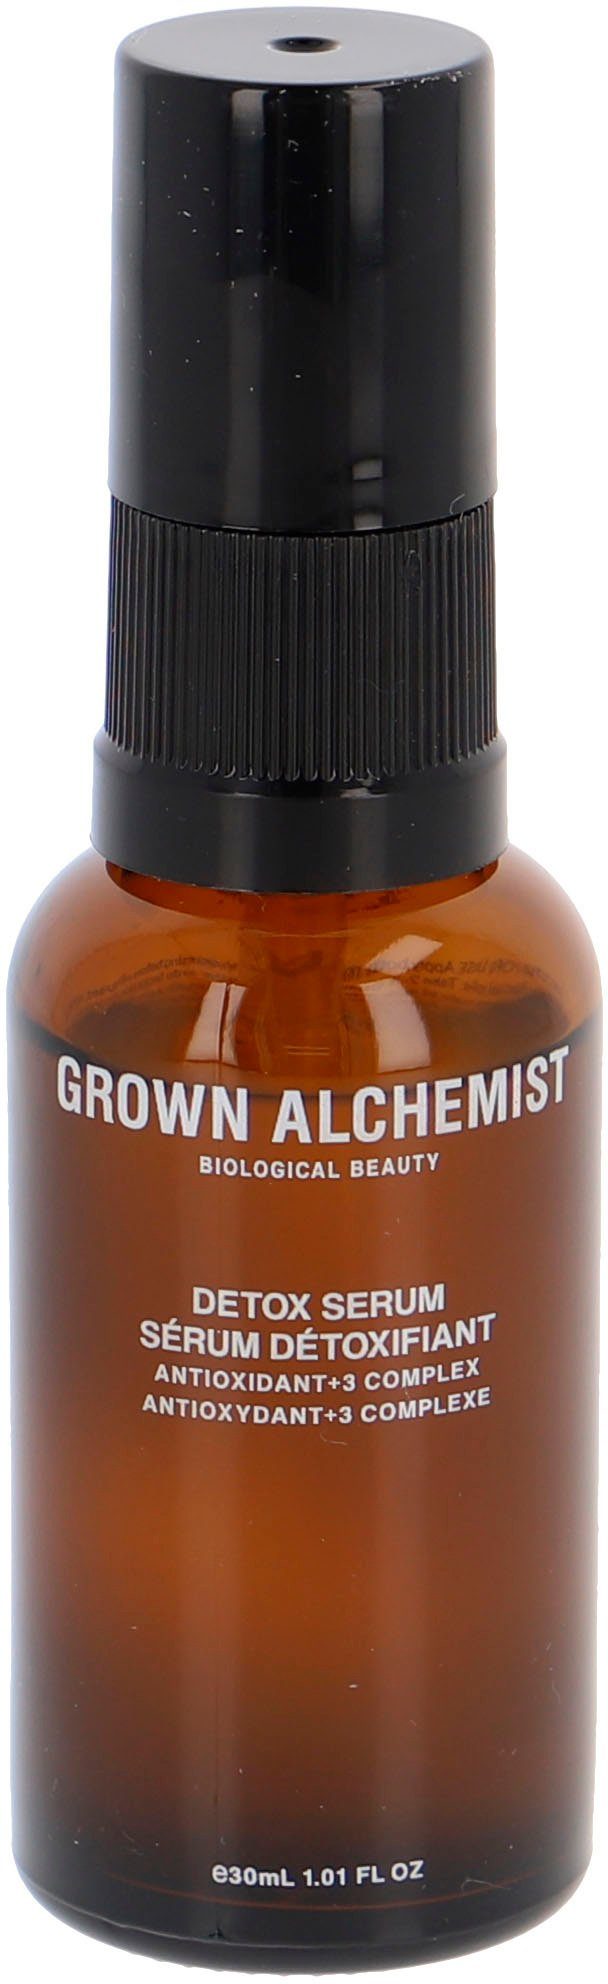 Complex 3 Serum Antioxidant+ Gesichtsserum ALCHEMIST GROWN Detox